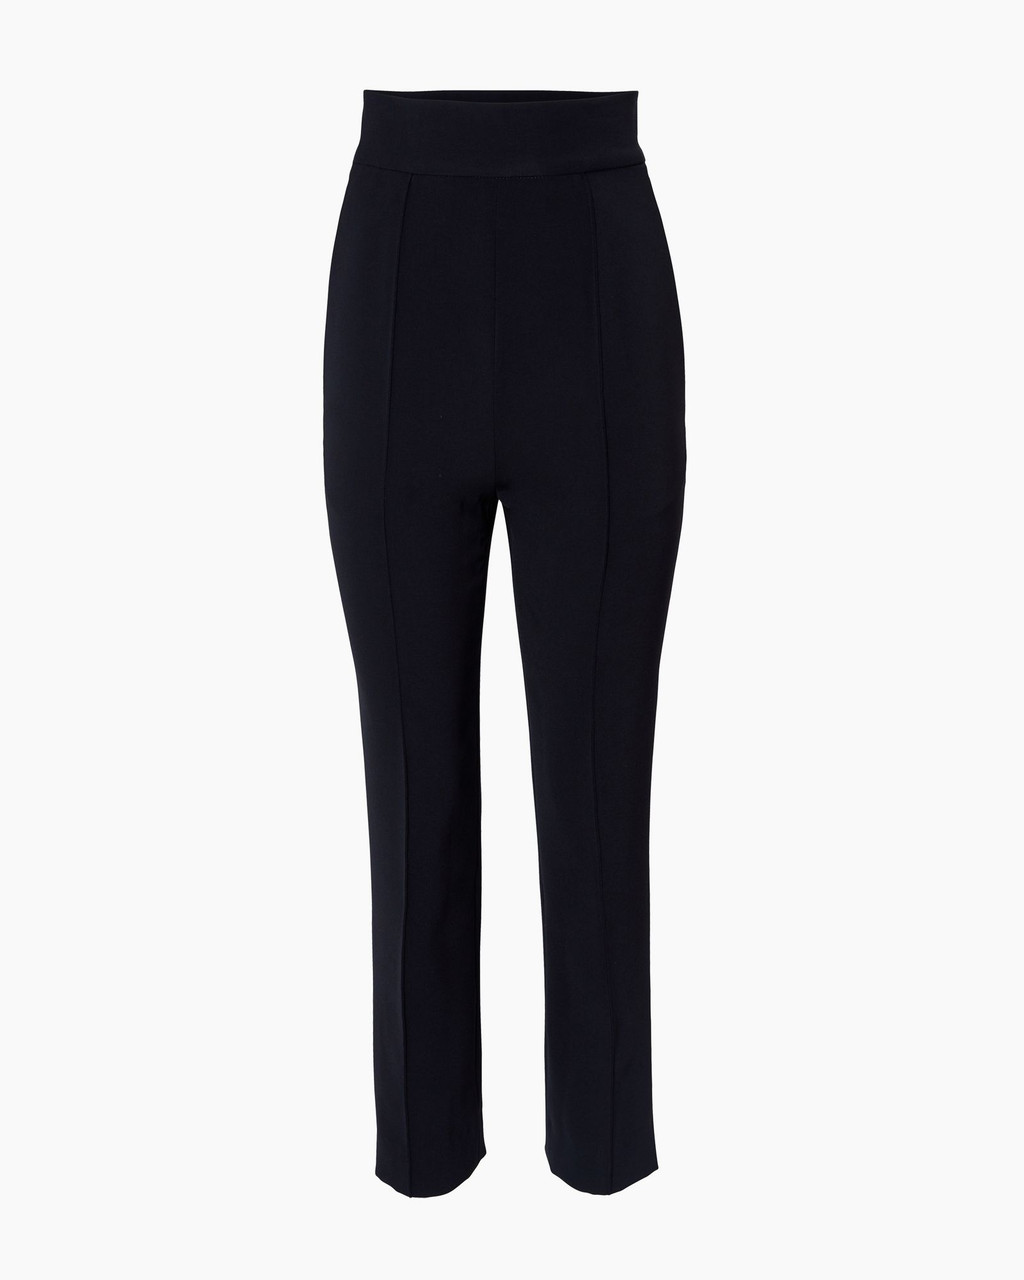 Carolina Herrera High-Waisted Skinny Pants in Black